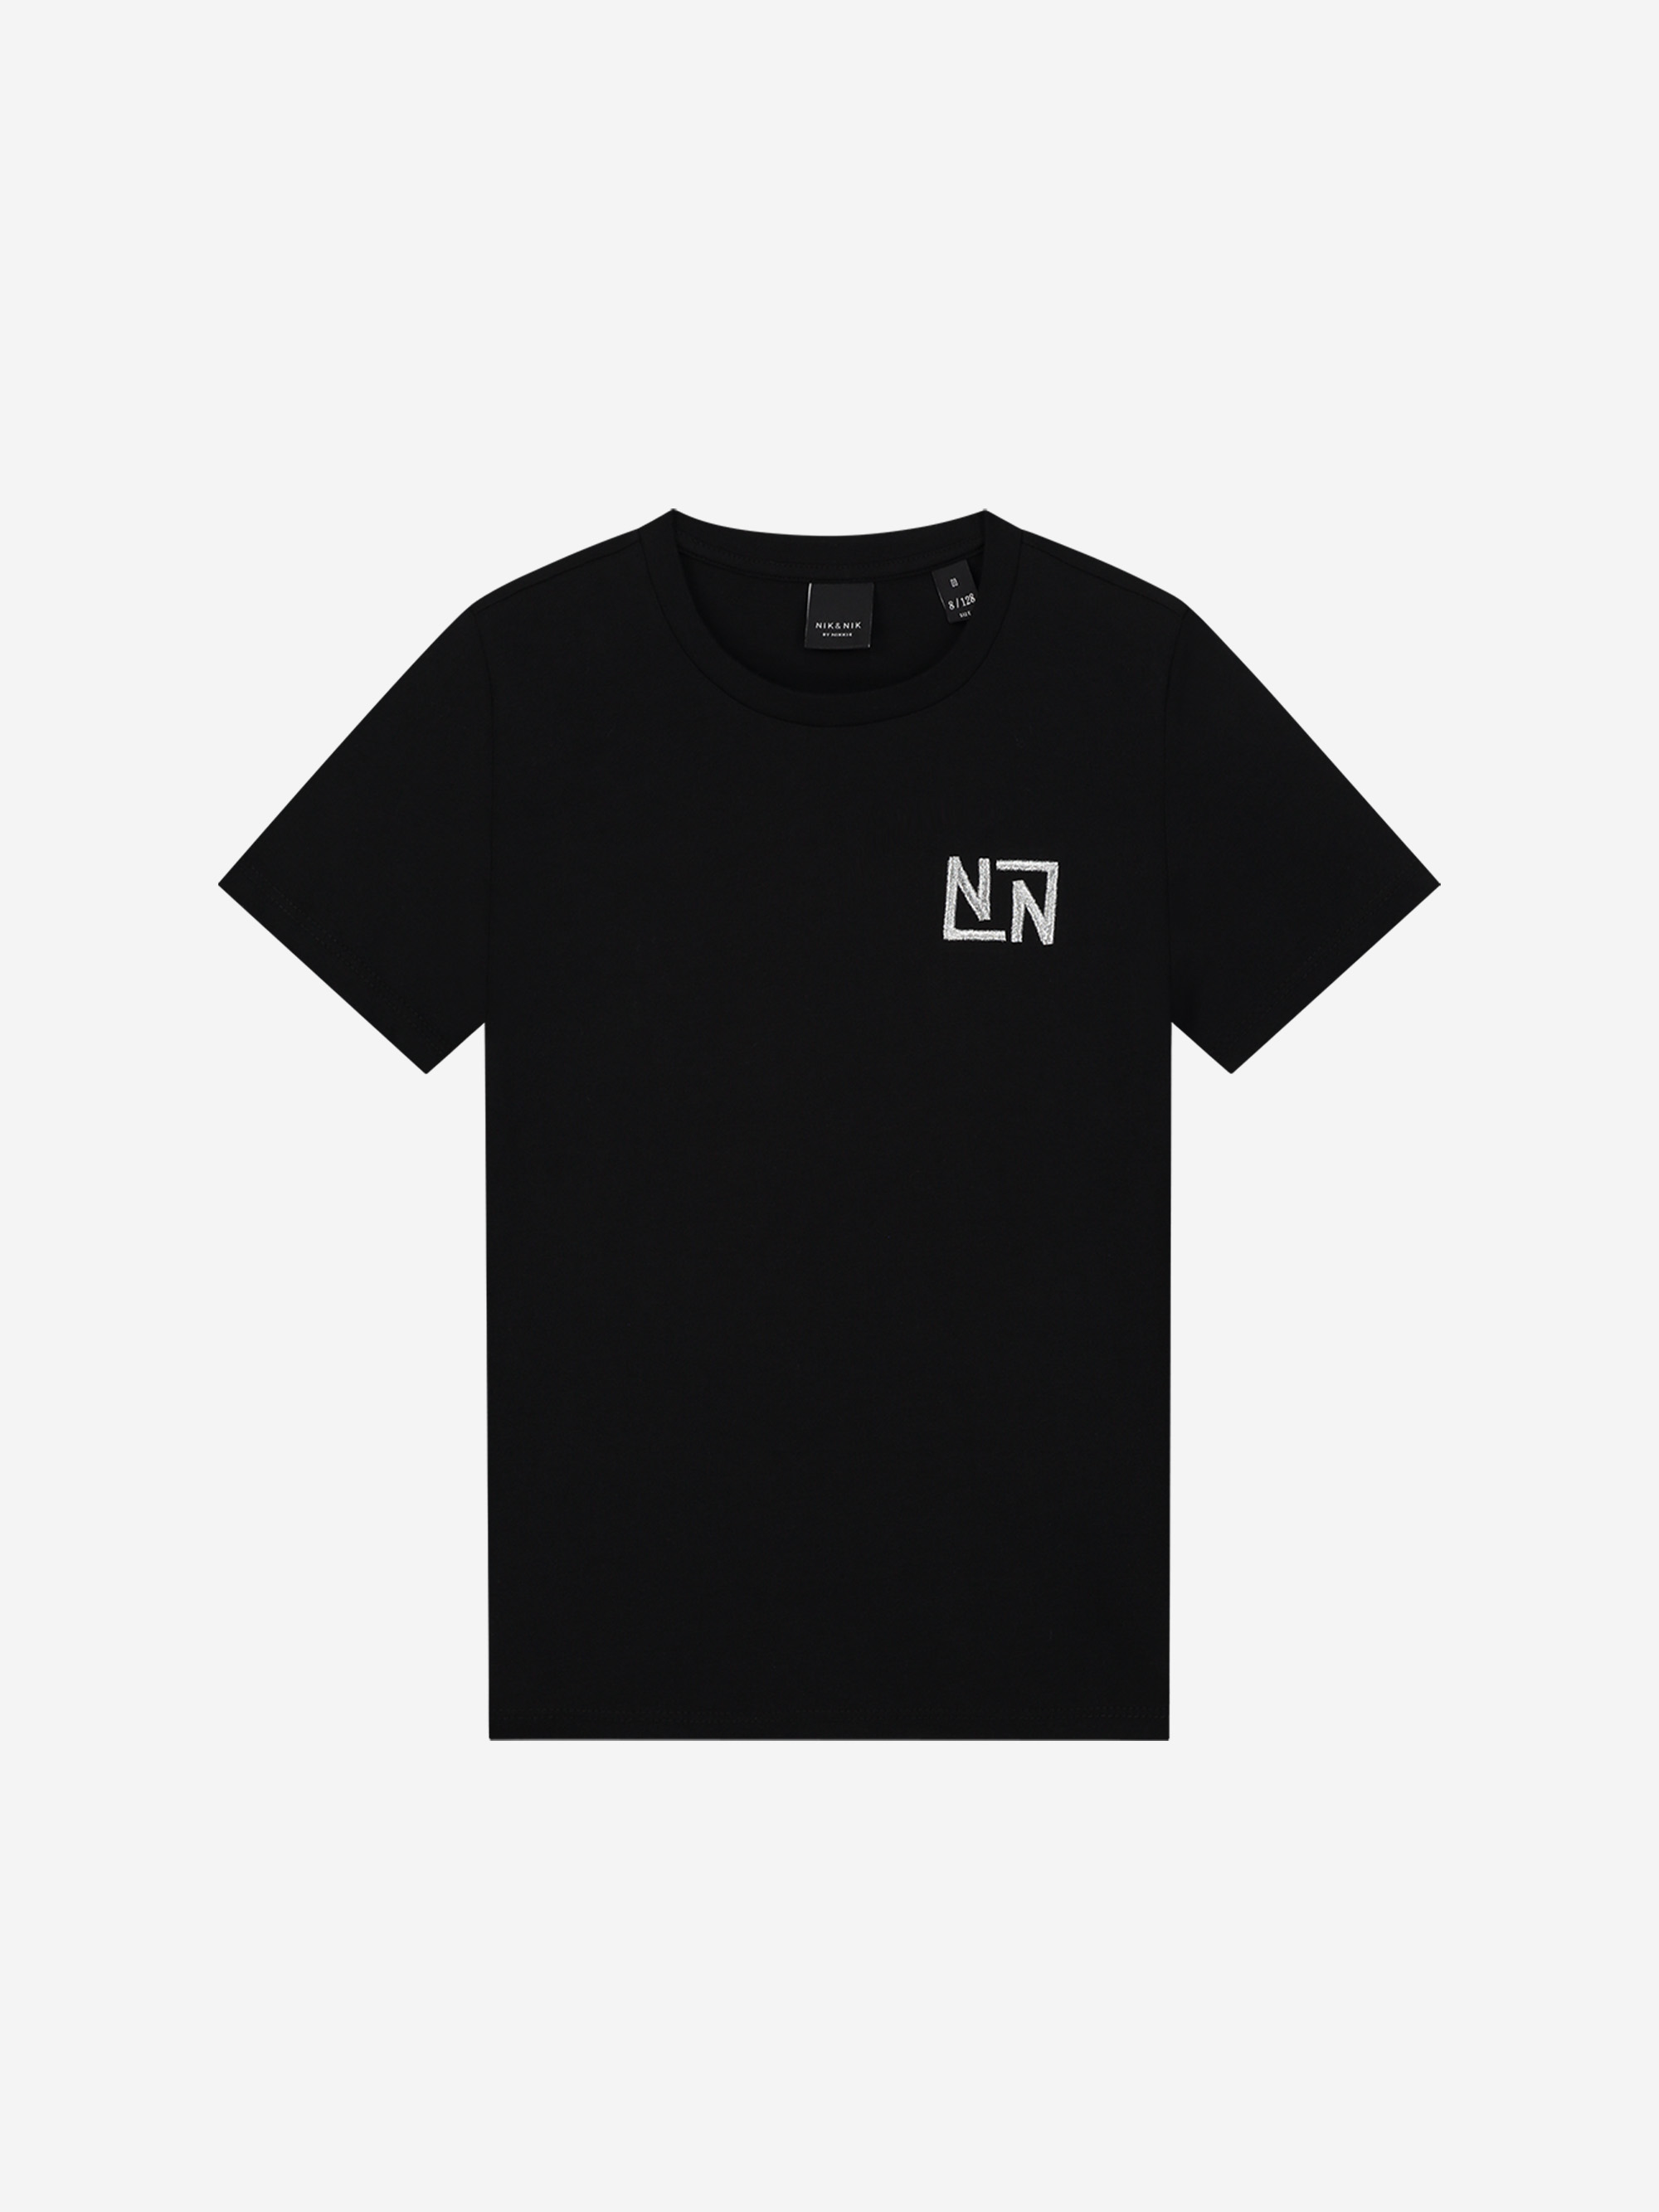 T-shirt met klein NN logo